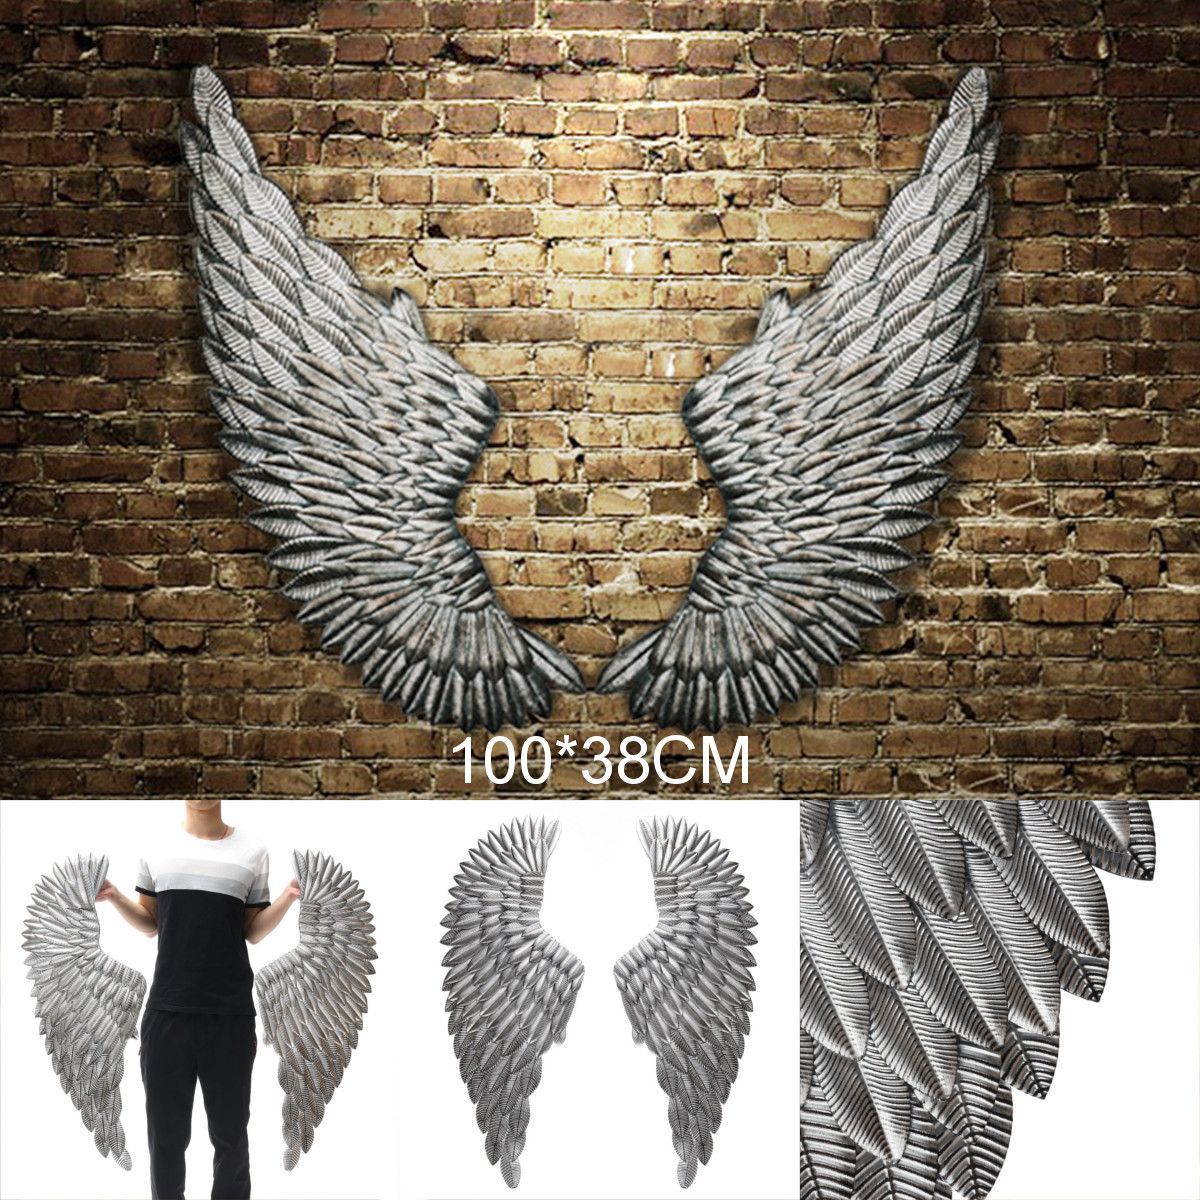 Wings-Wall-Hangings-Walk-Sticker-Decor-1567293